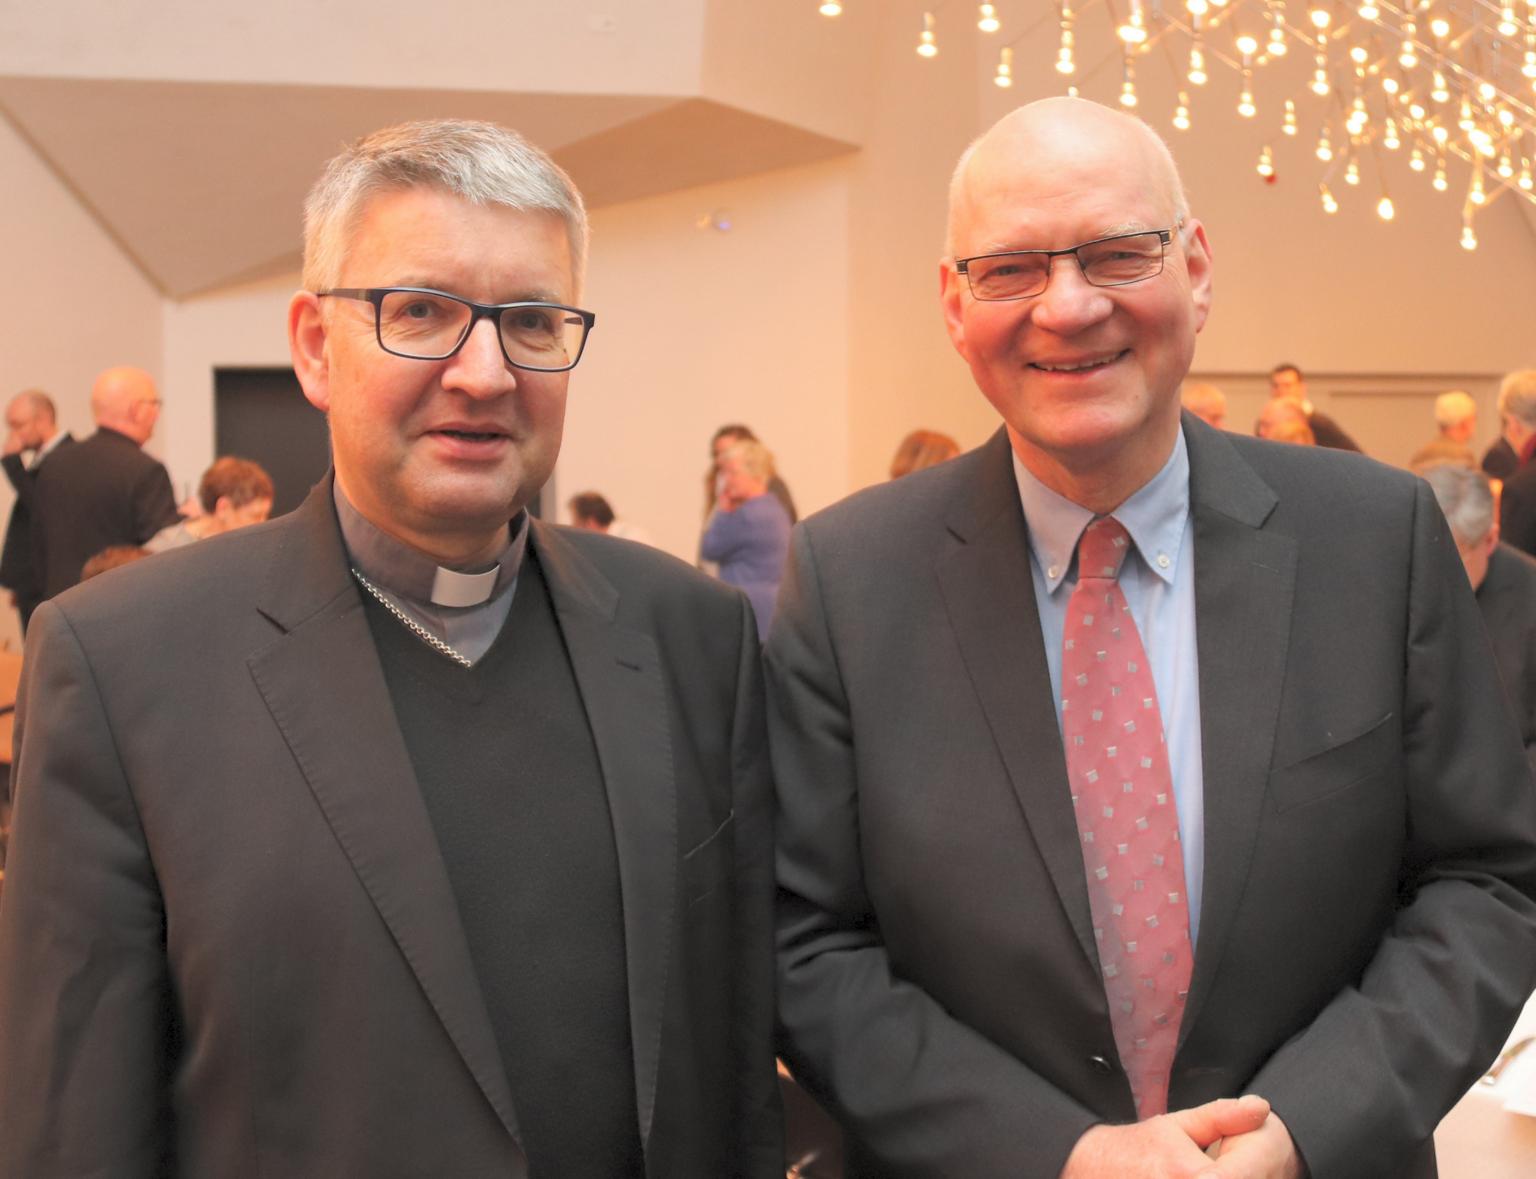 Mainz, 19.12.2018: Bischof Peter Kohlgraf (l.) würdigte die Verdienste von Thomas Drescher als 